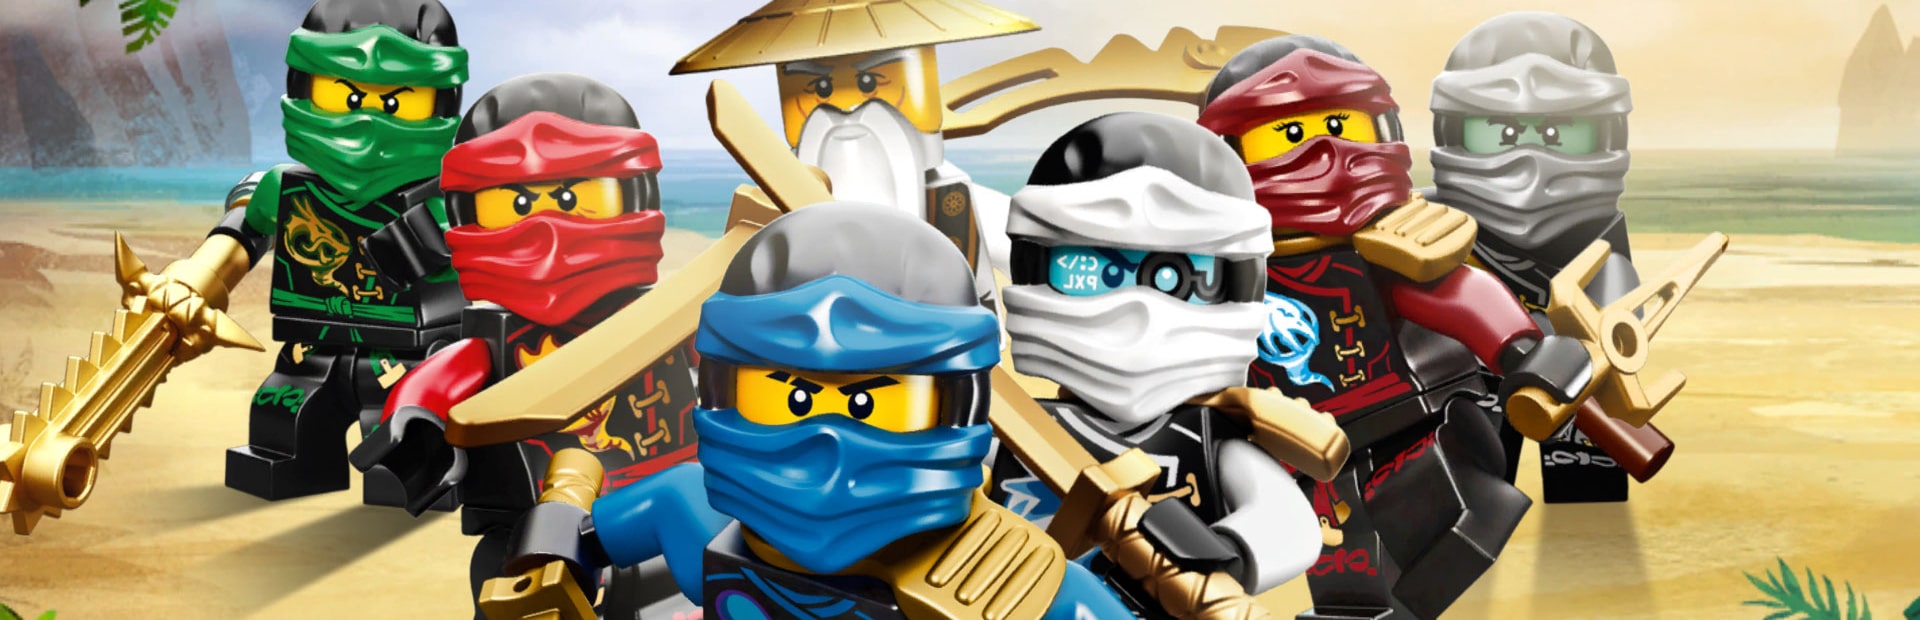 LEGO Battles: Ninjago | Nintendo DS | Wallpaper